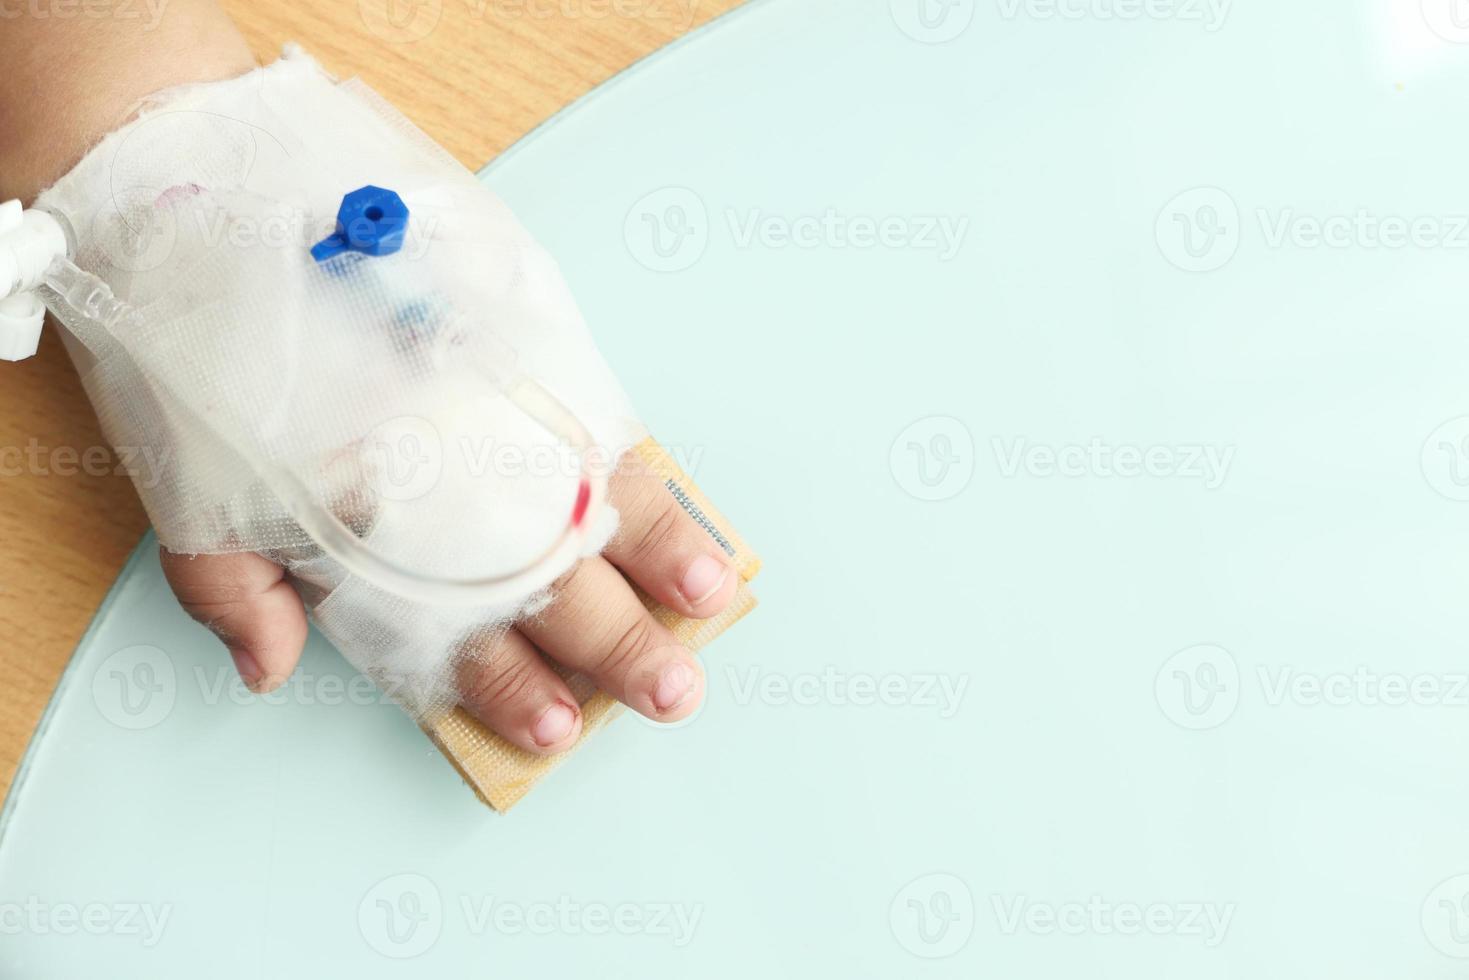 La mano del bebé con una venda dando solución salina en la cama de un hospital foto